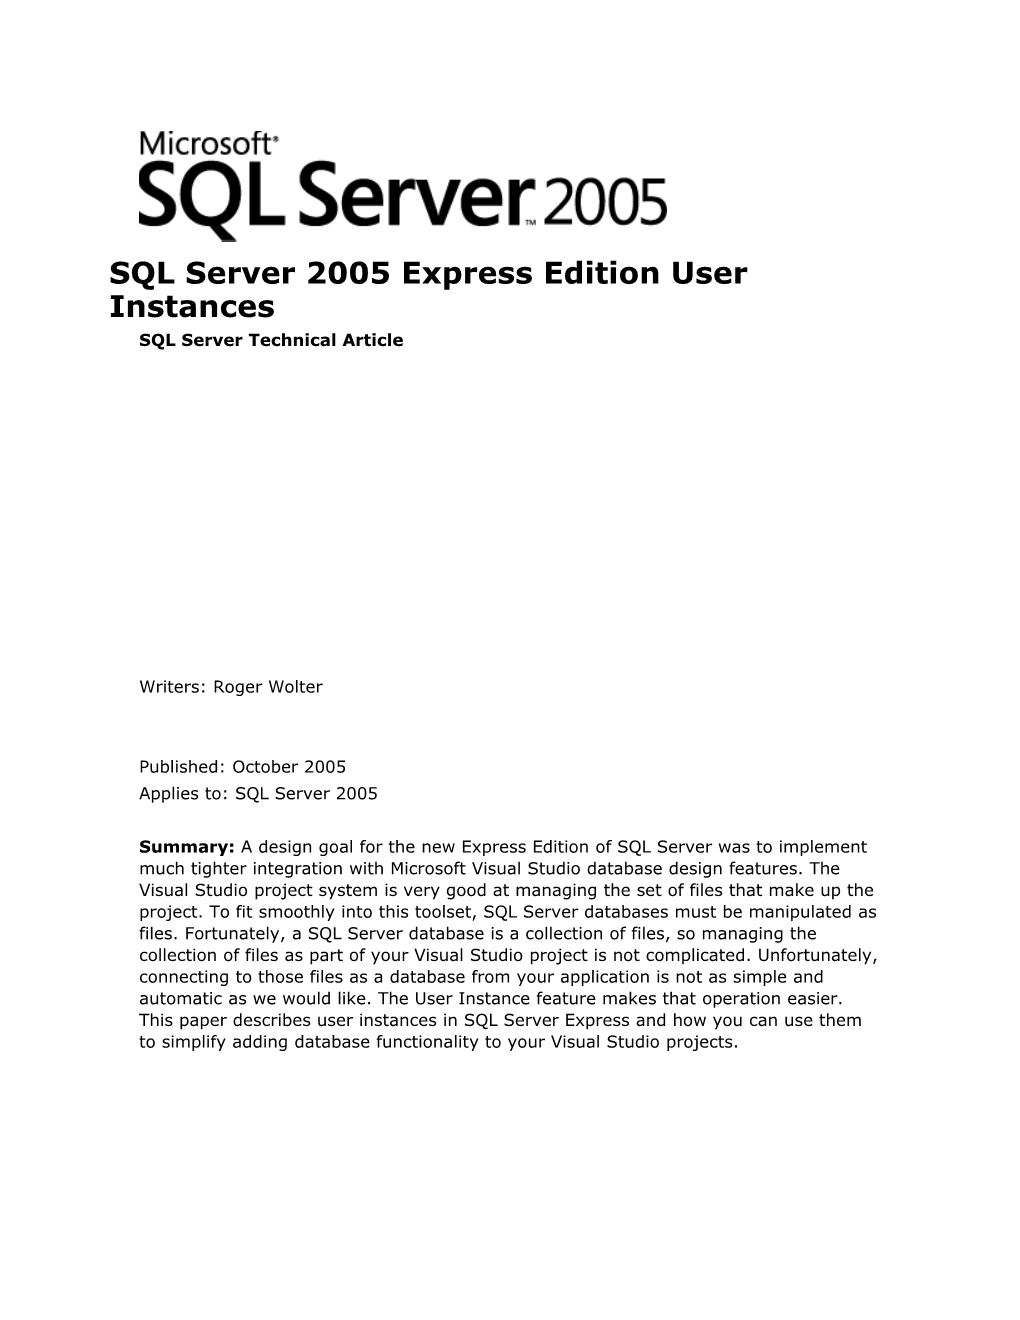 SQL Server 2005 Express Edition User Instances